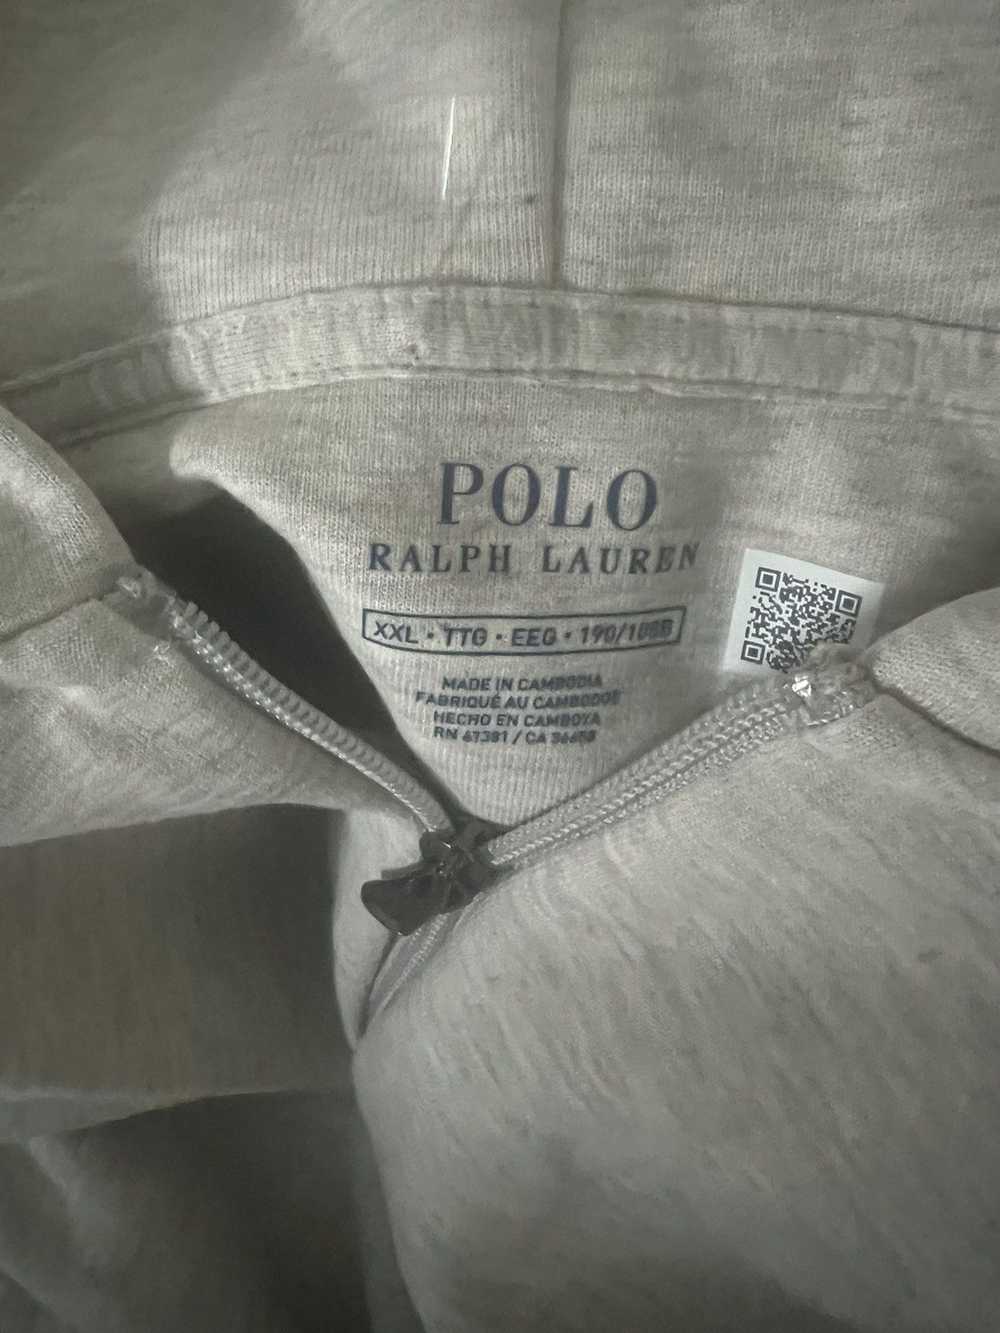 Polo Ralph Lauren Polo Ralph Lauren zip up - image 3